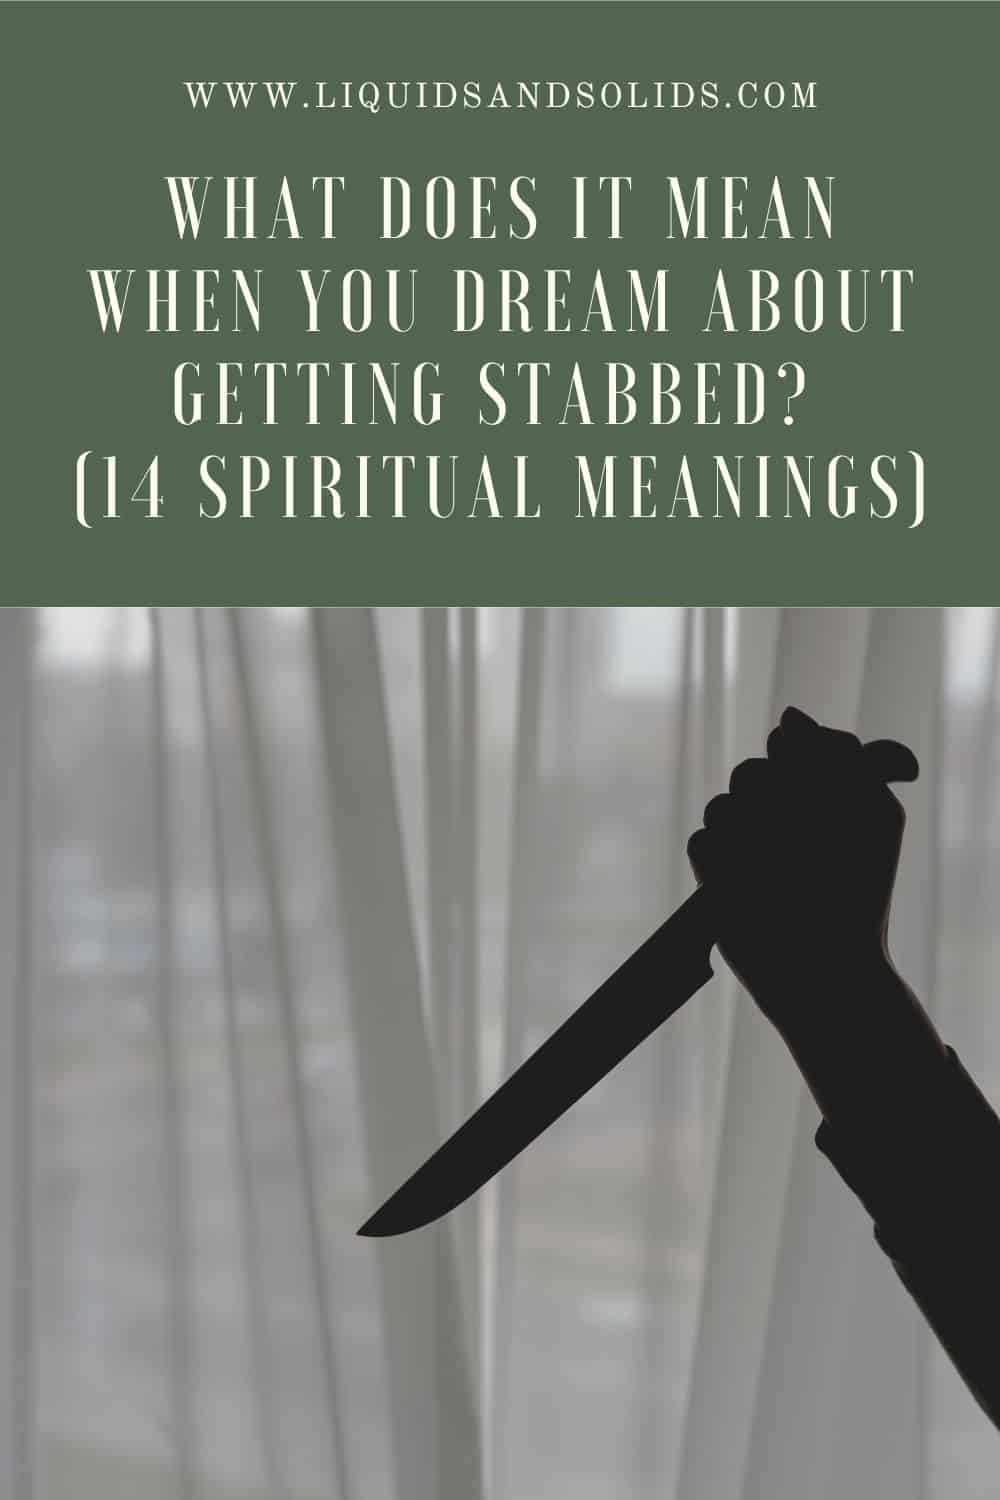  Hvad betyder det, når du drømmer om at blive stukket ned (14 spirituelle betydninger)?